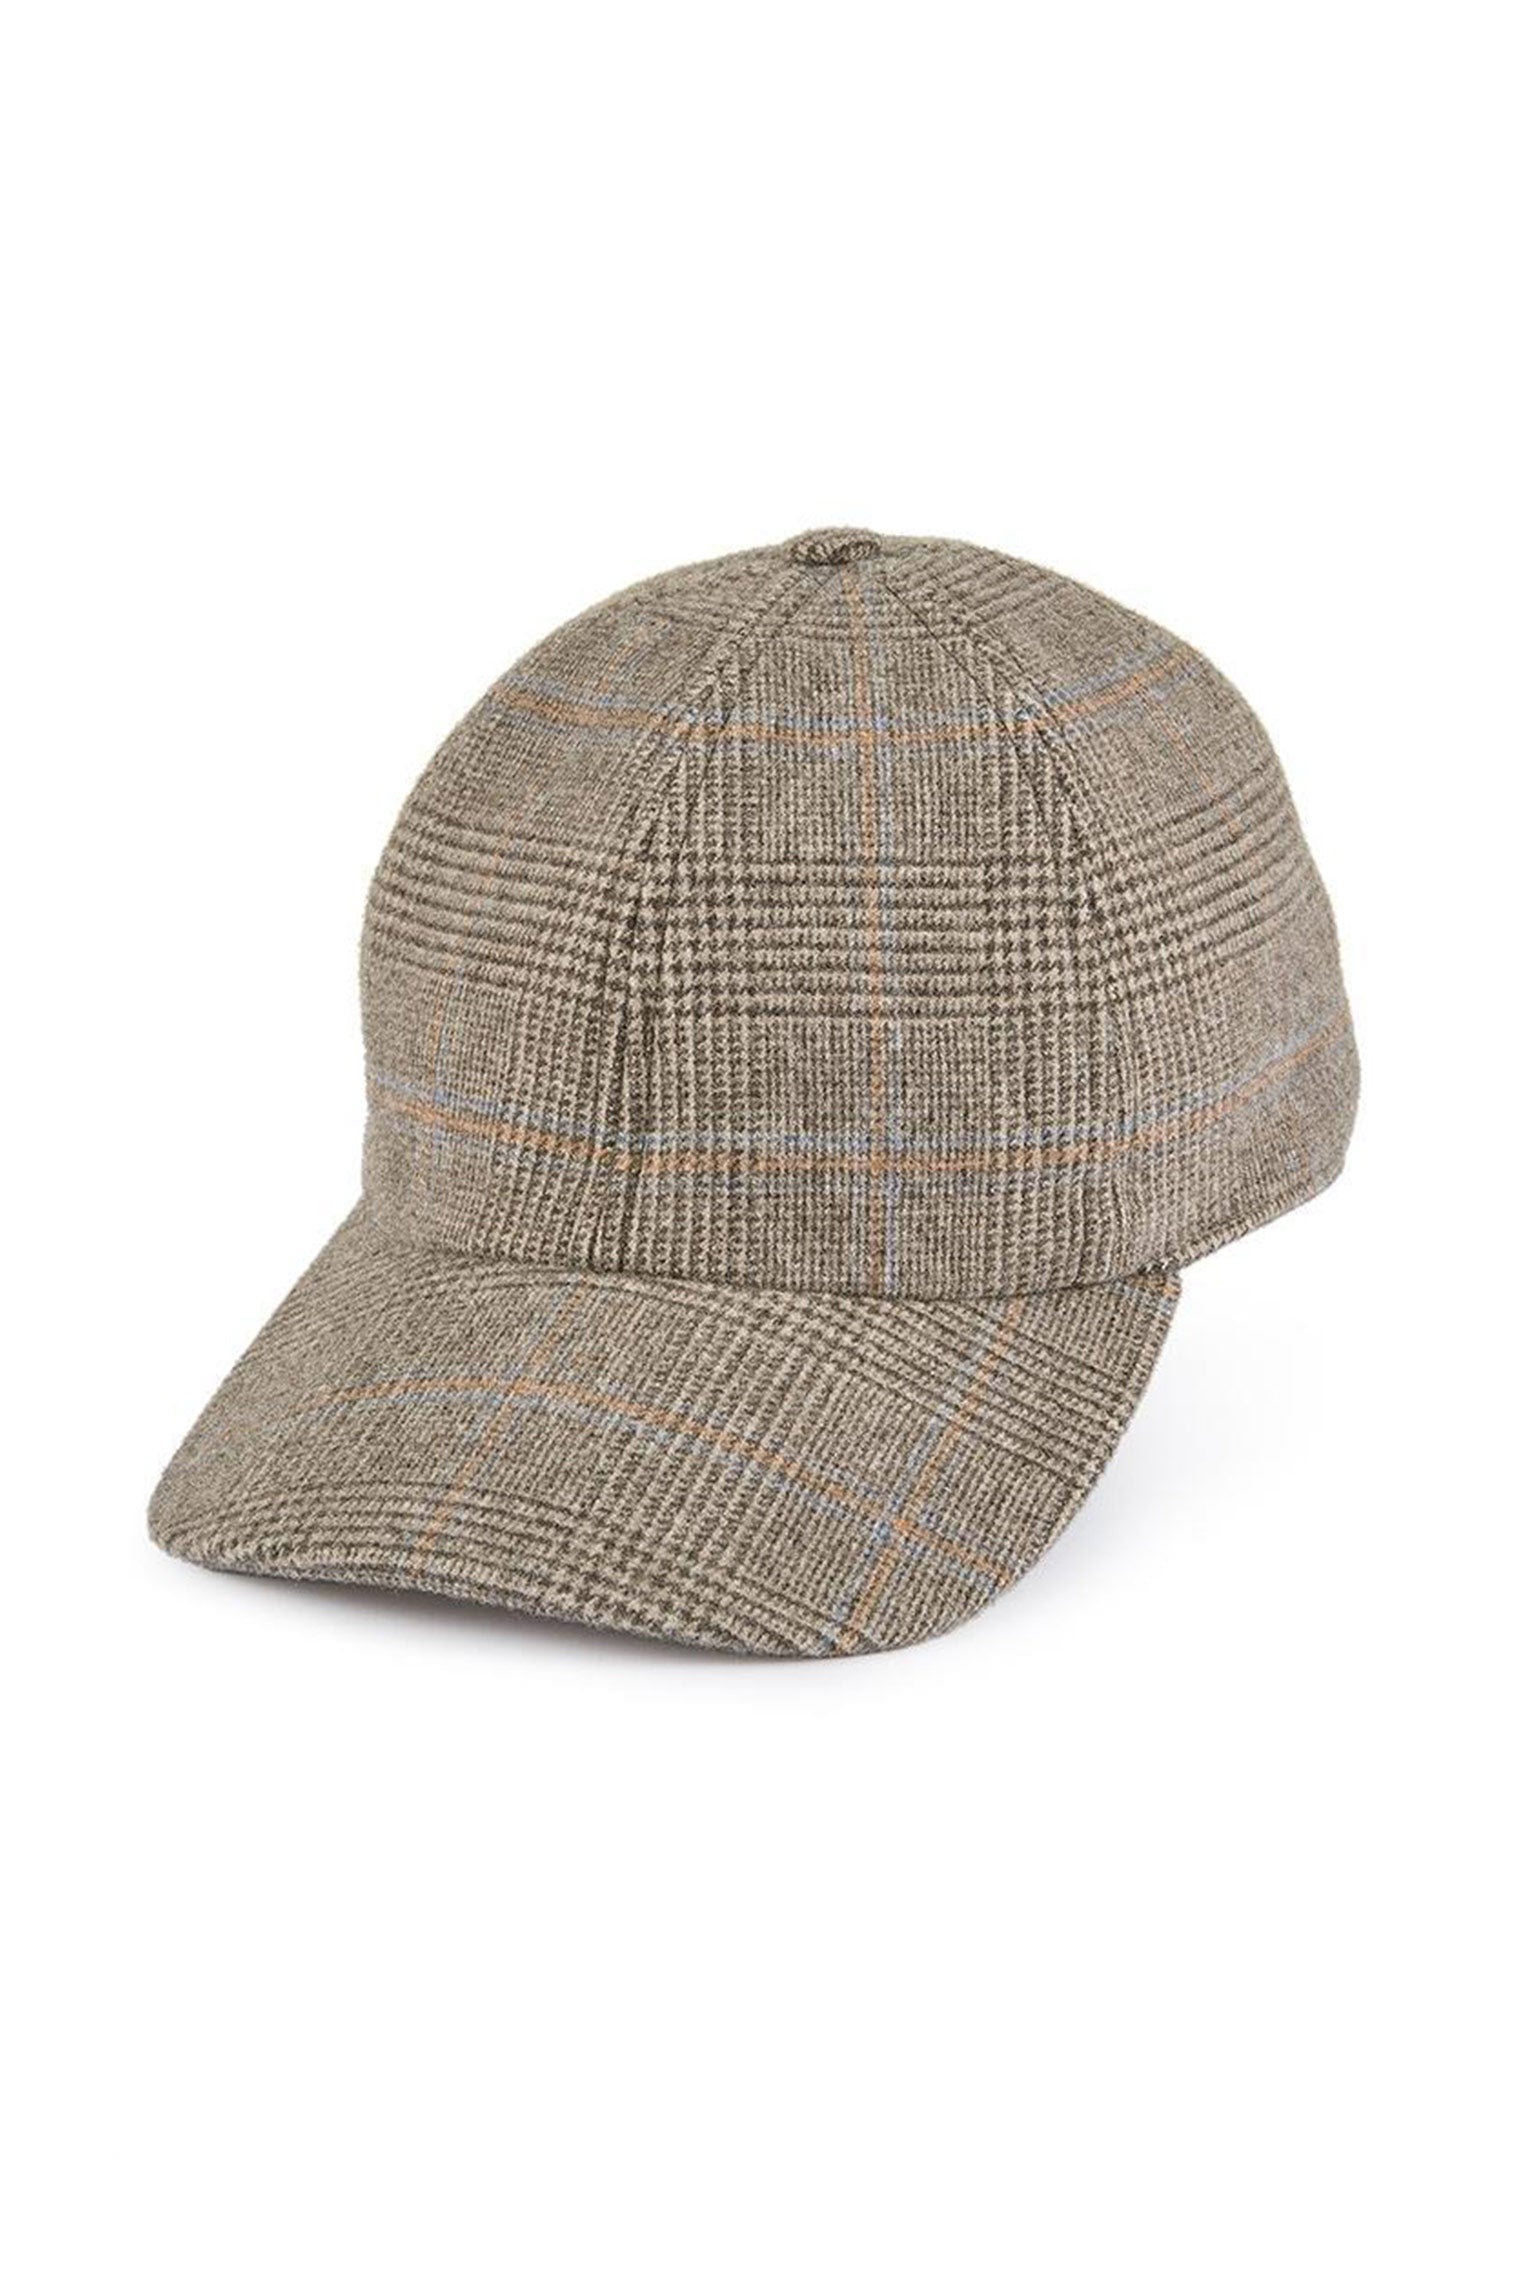 Escorial Wool Baseball Cap - All Ready to Wear - Lock & Co. Hatters London UK